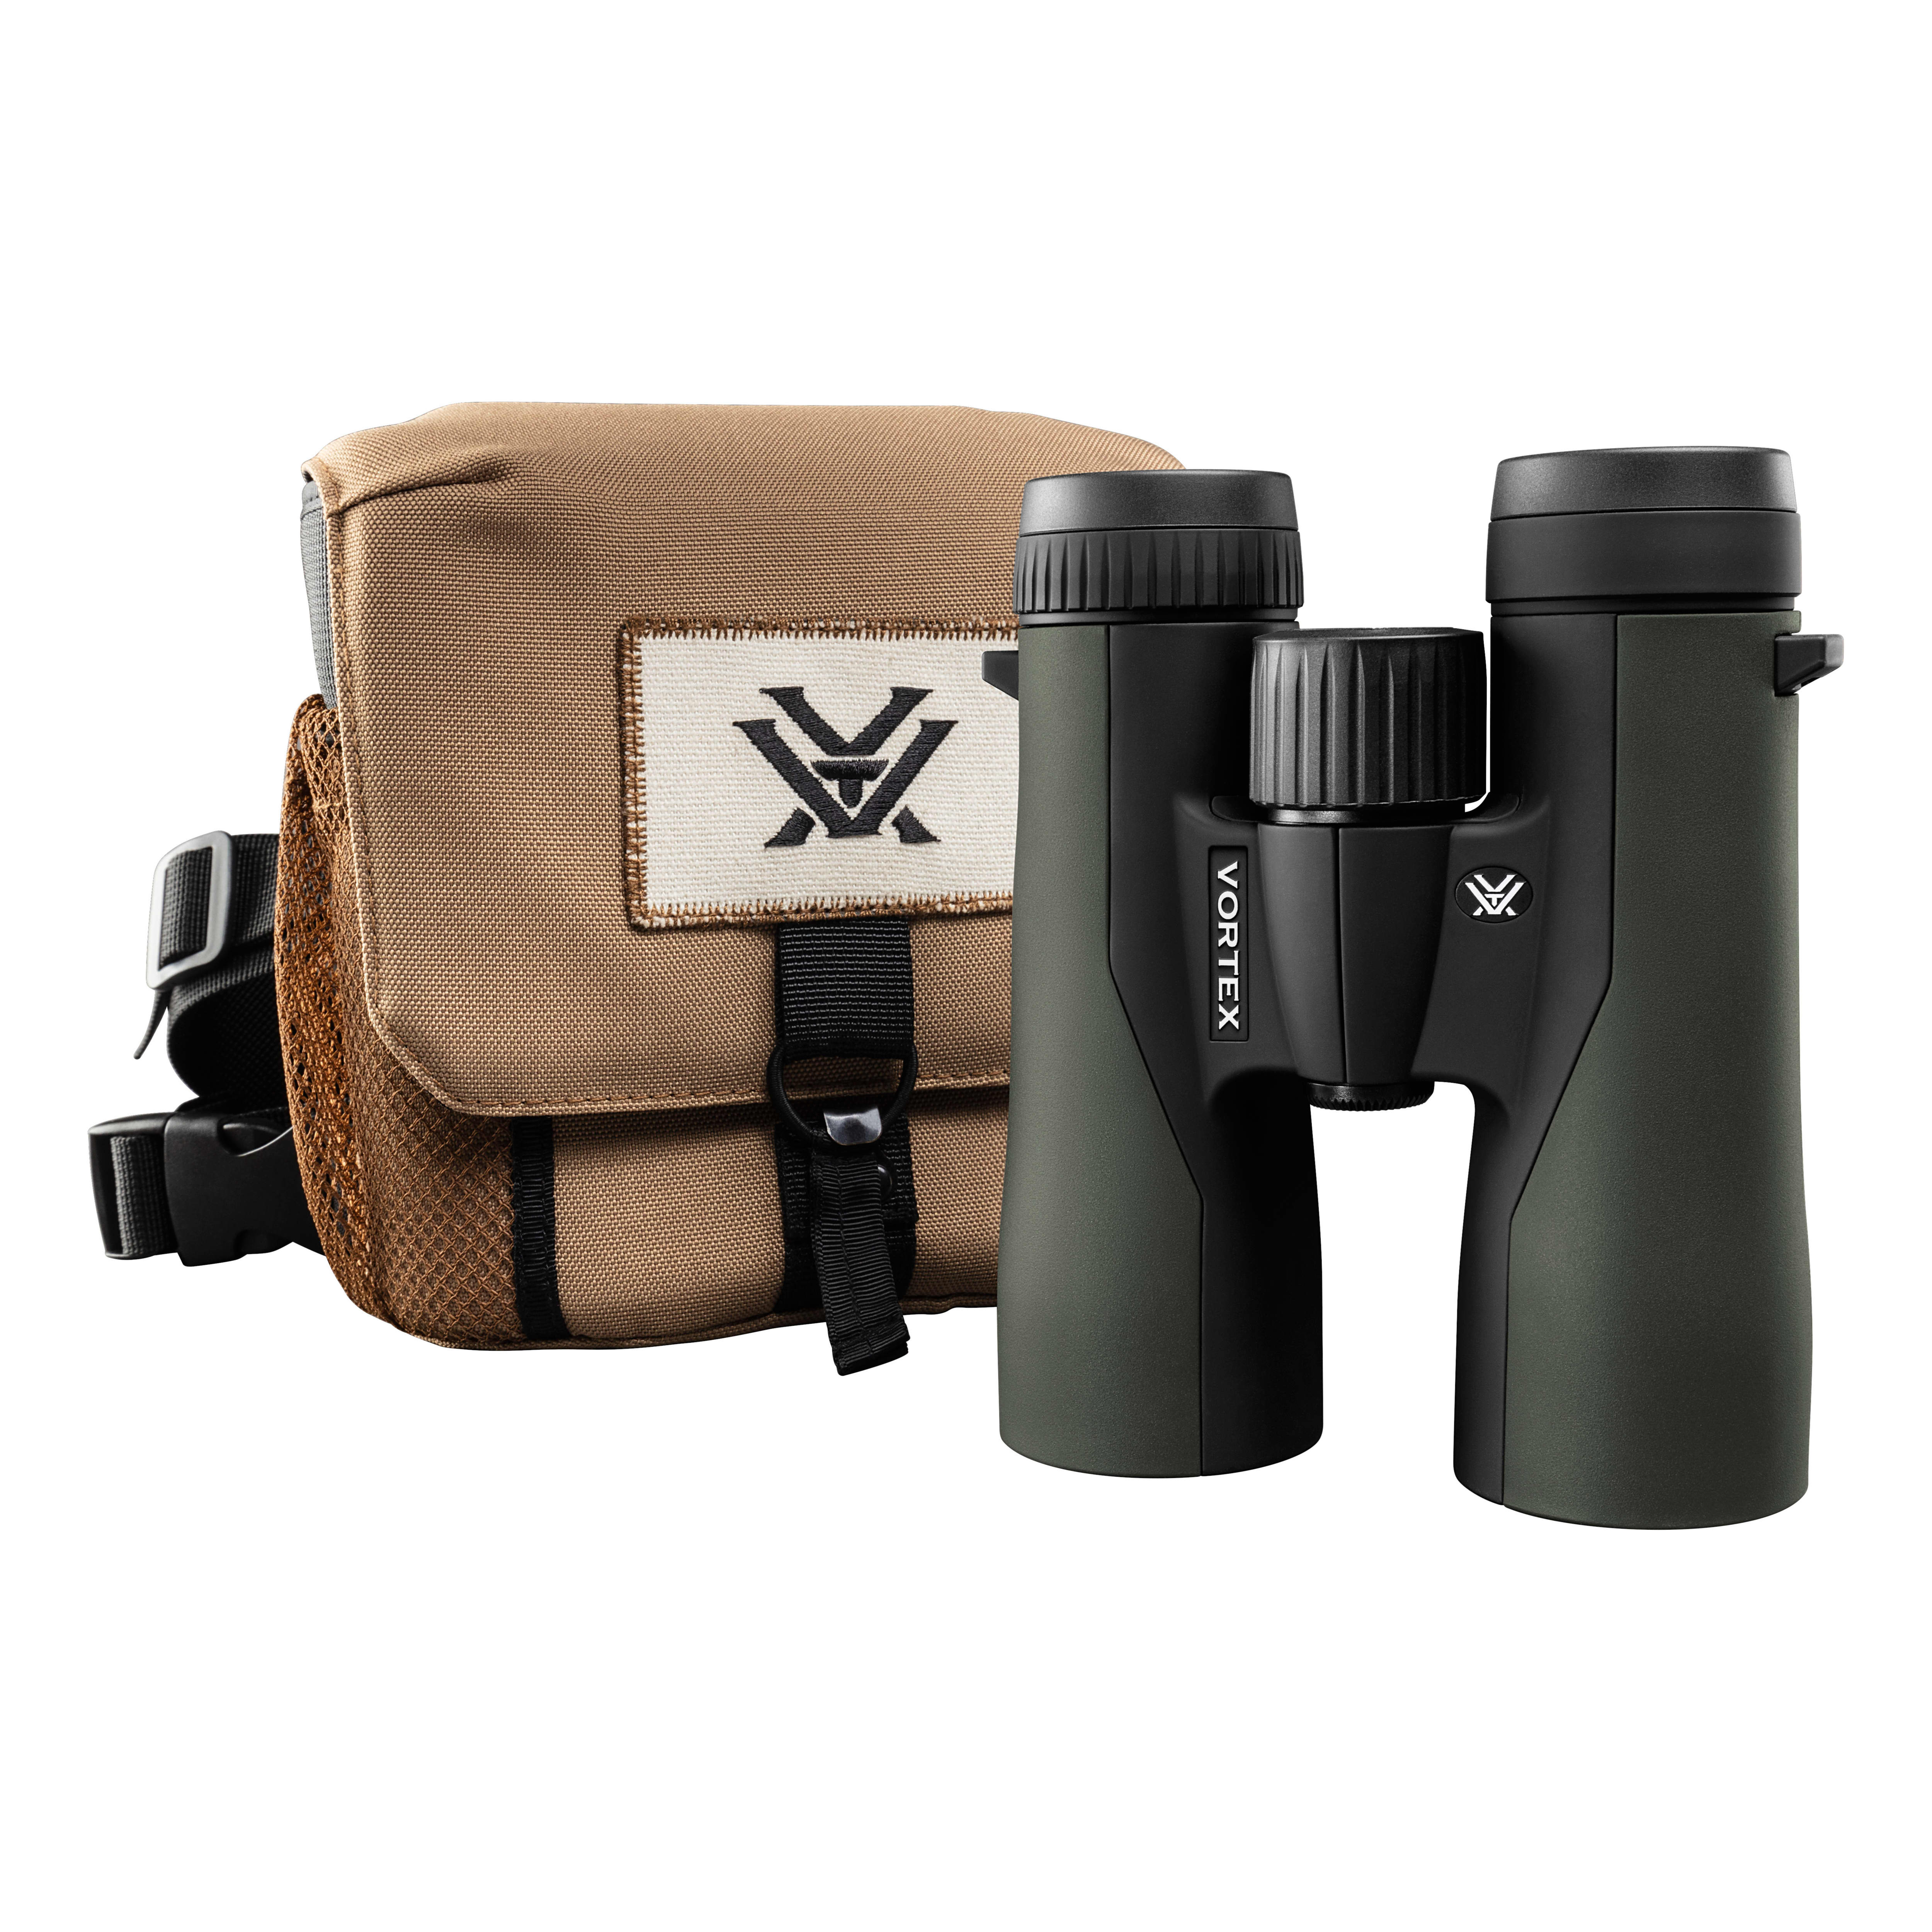 Vortex® Crossfire® Binoculars - With GlassPak View